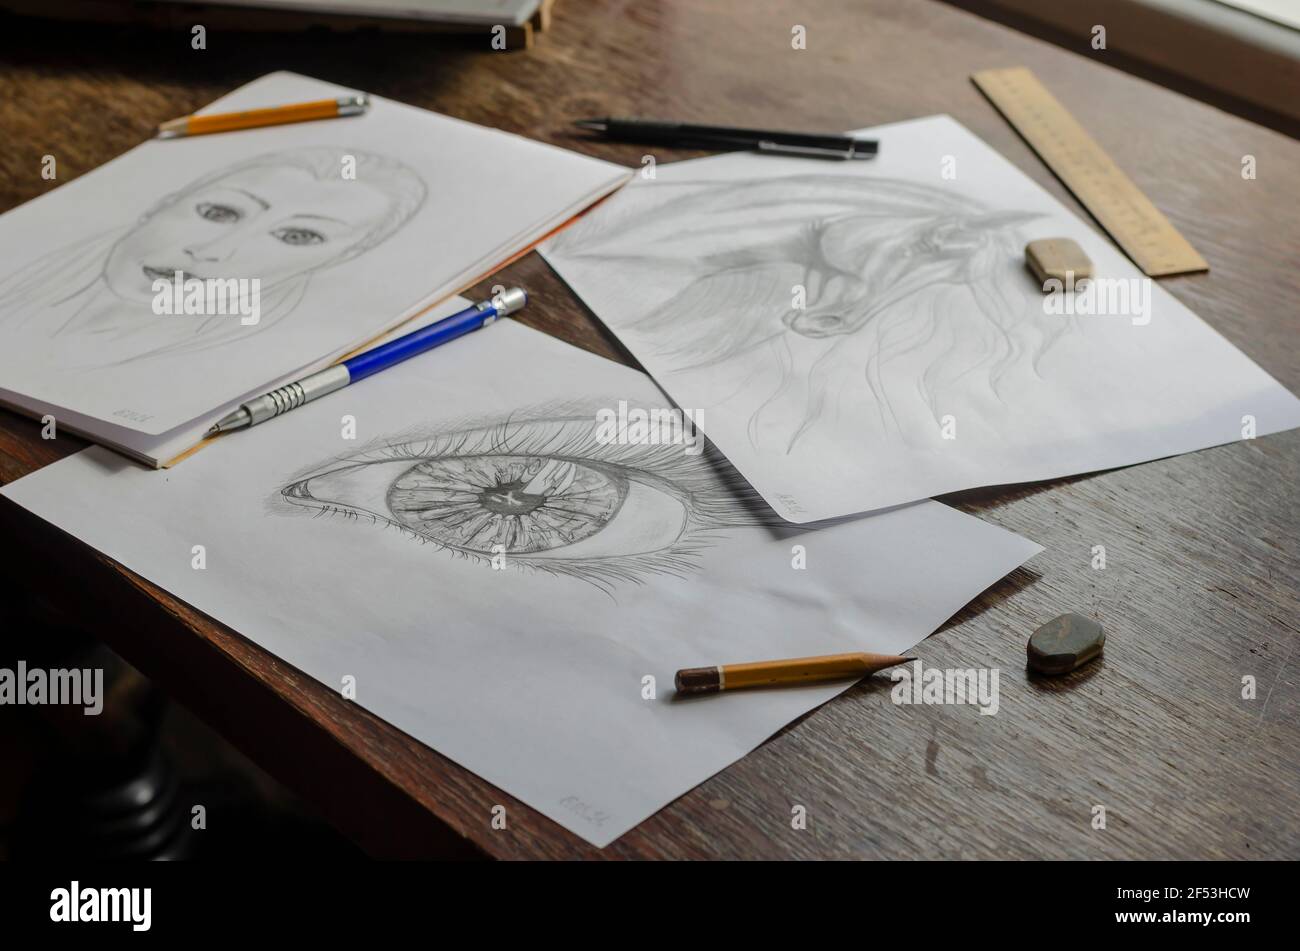 Los dibujos hechos con un lápiz se encuentran sobre una mesa de madera  marrón. Caballo, ojo humano y retrato conceptual femenino dibujado en papel  blanco. Lápices, borrador y regla Fotografía de stock -